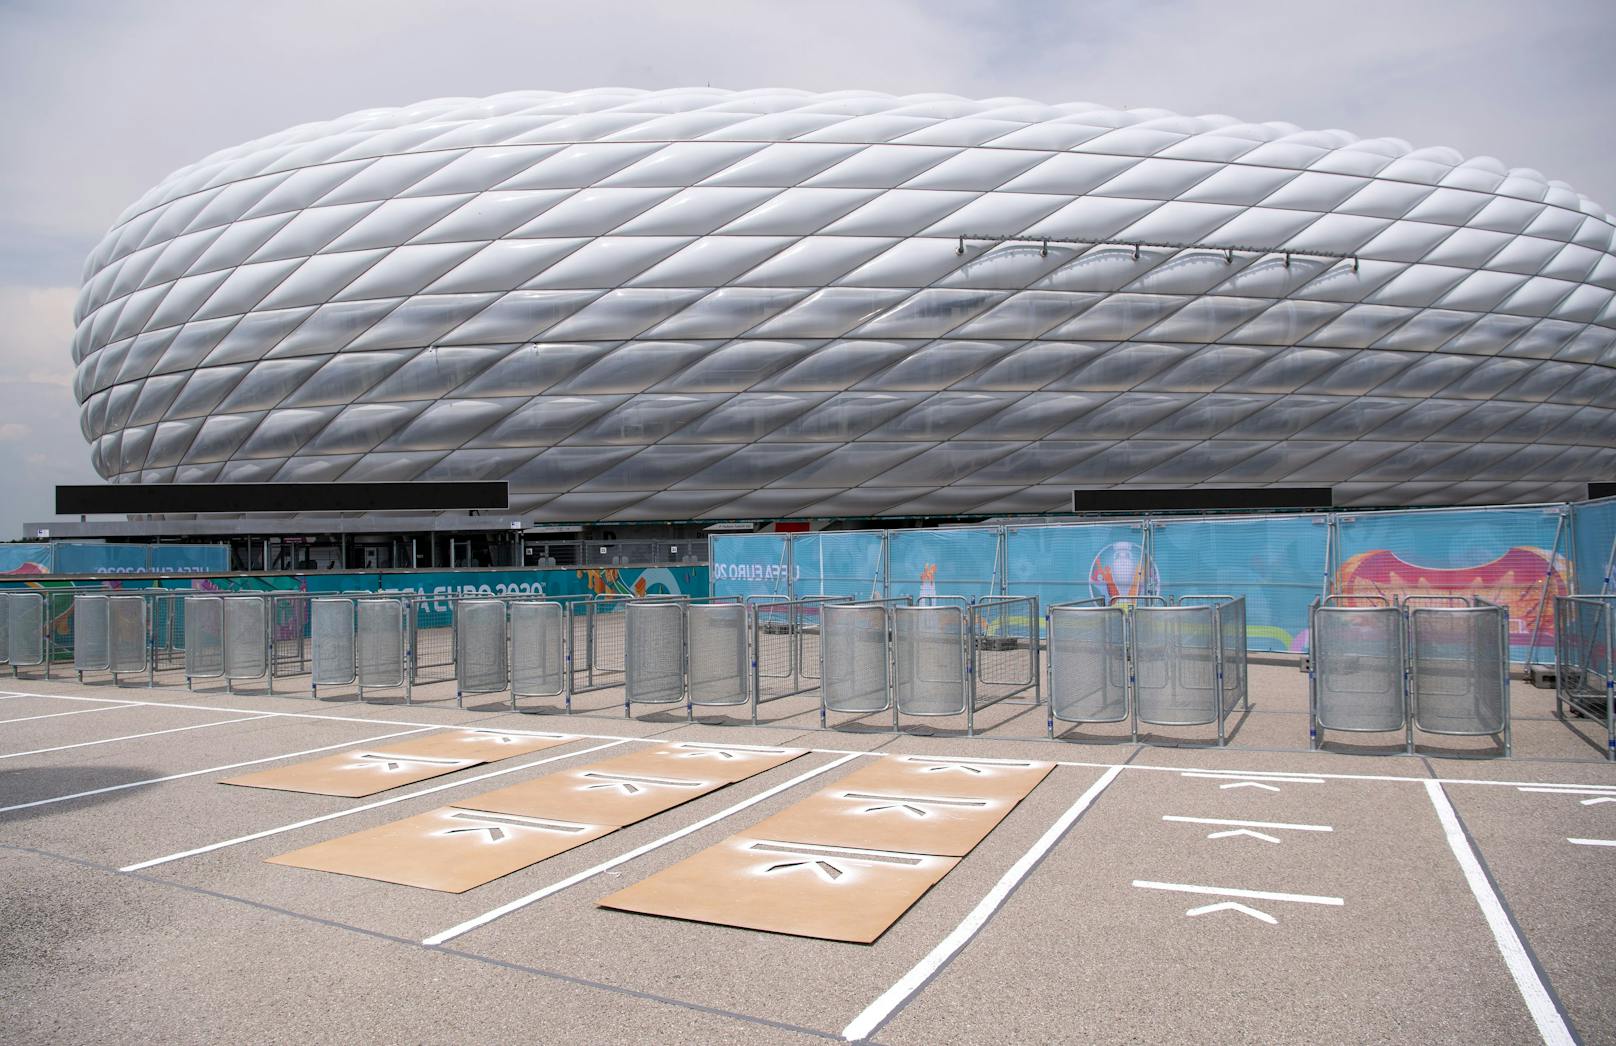 Wird im Münchner Stadion kein Bier ausgeschenkt?